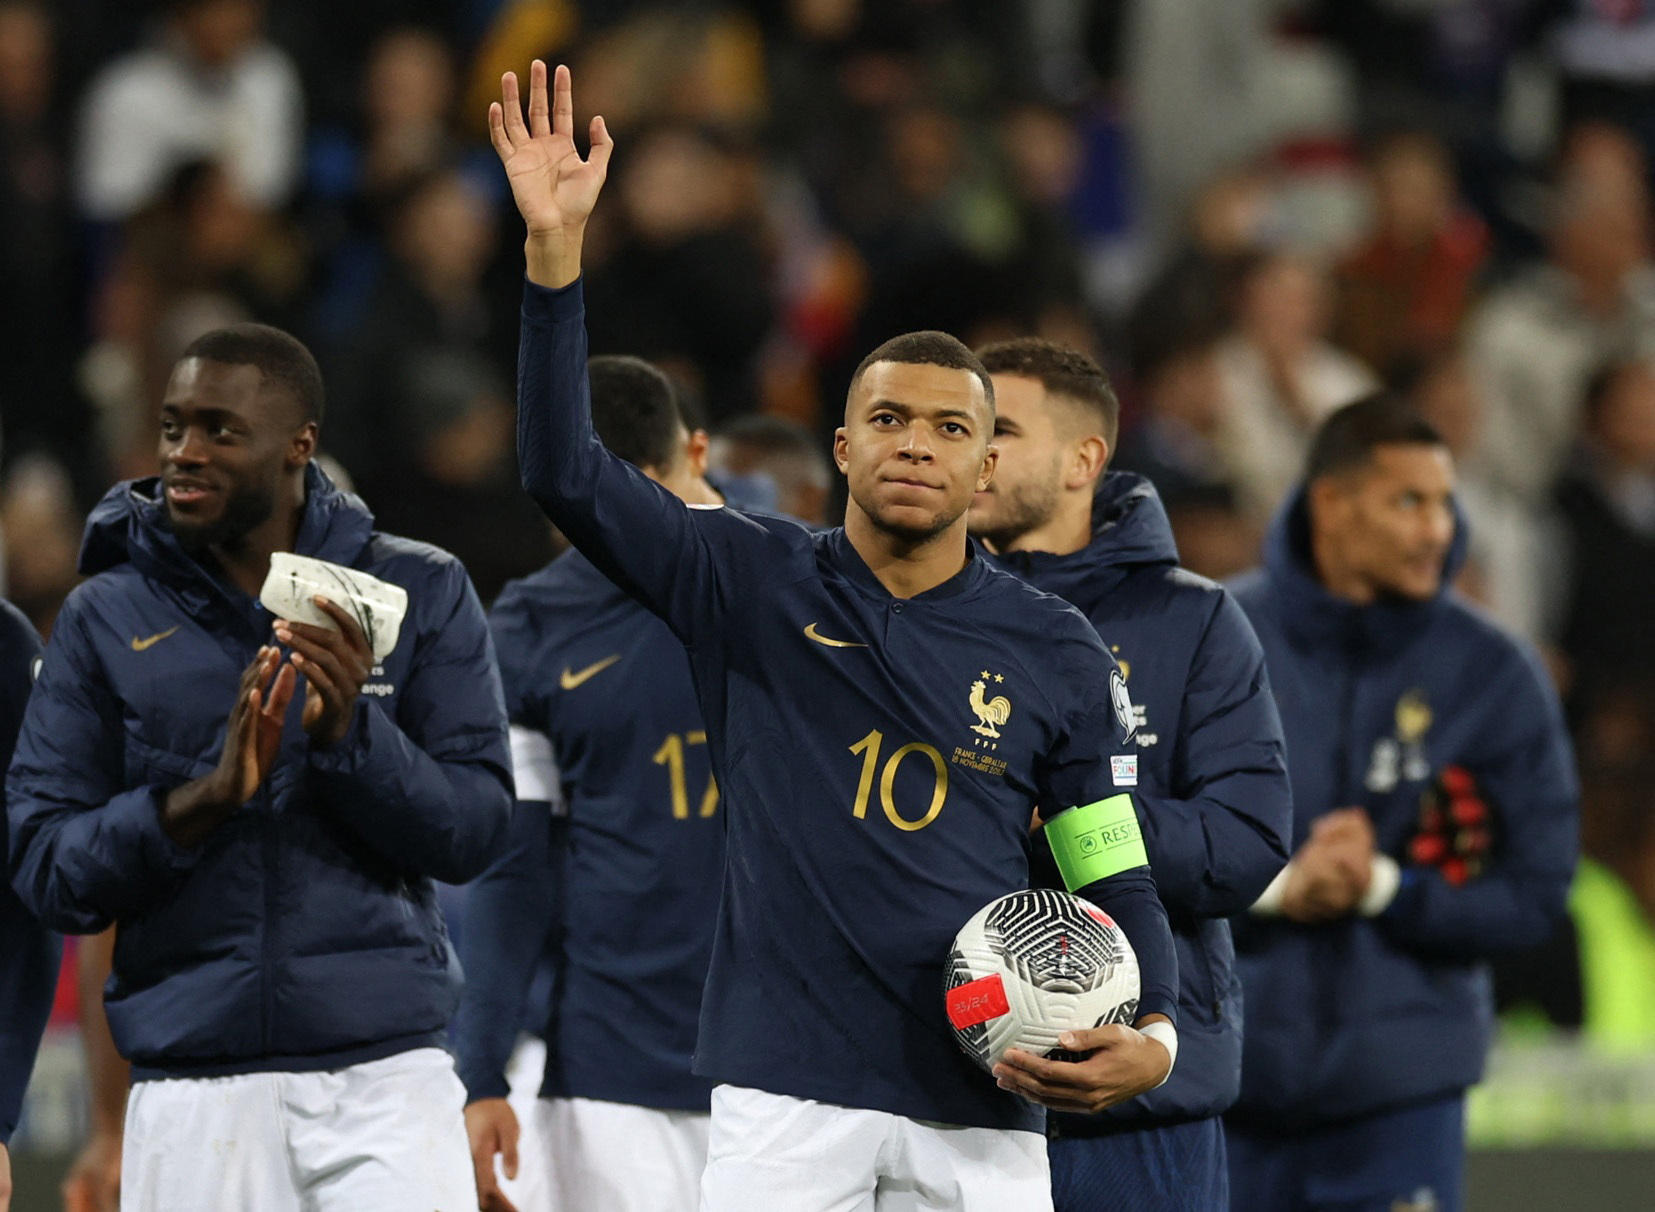 فرنسا تحقق أكبر انتصار في تاريخها بفوزها على جبل طارق 14-0